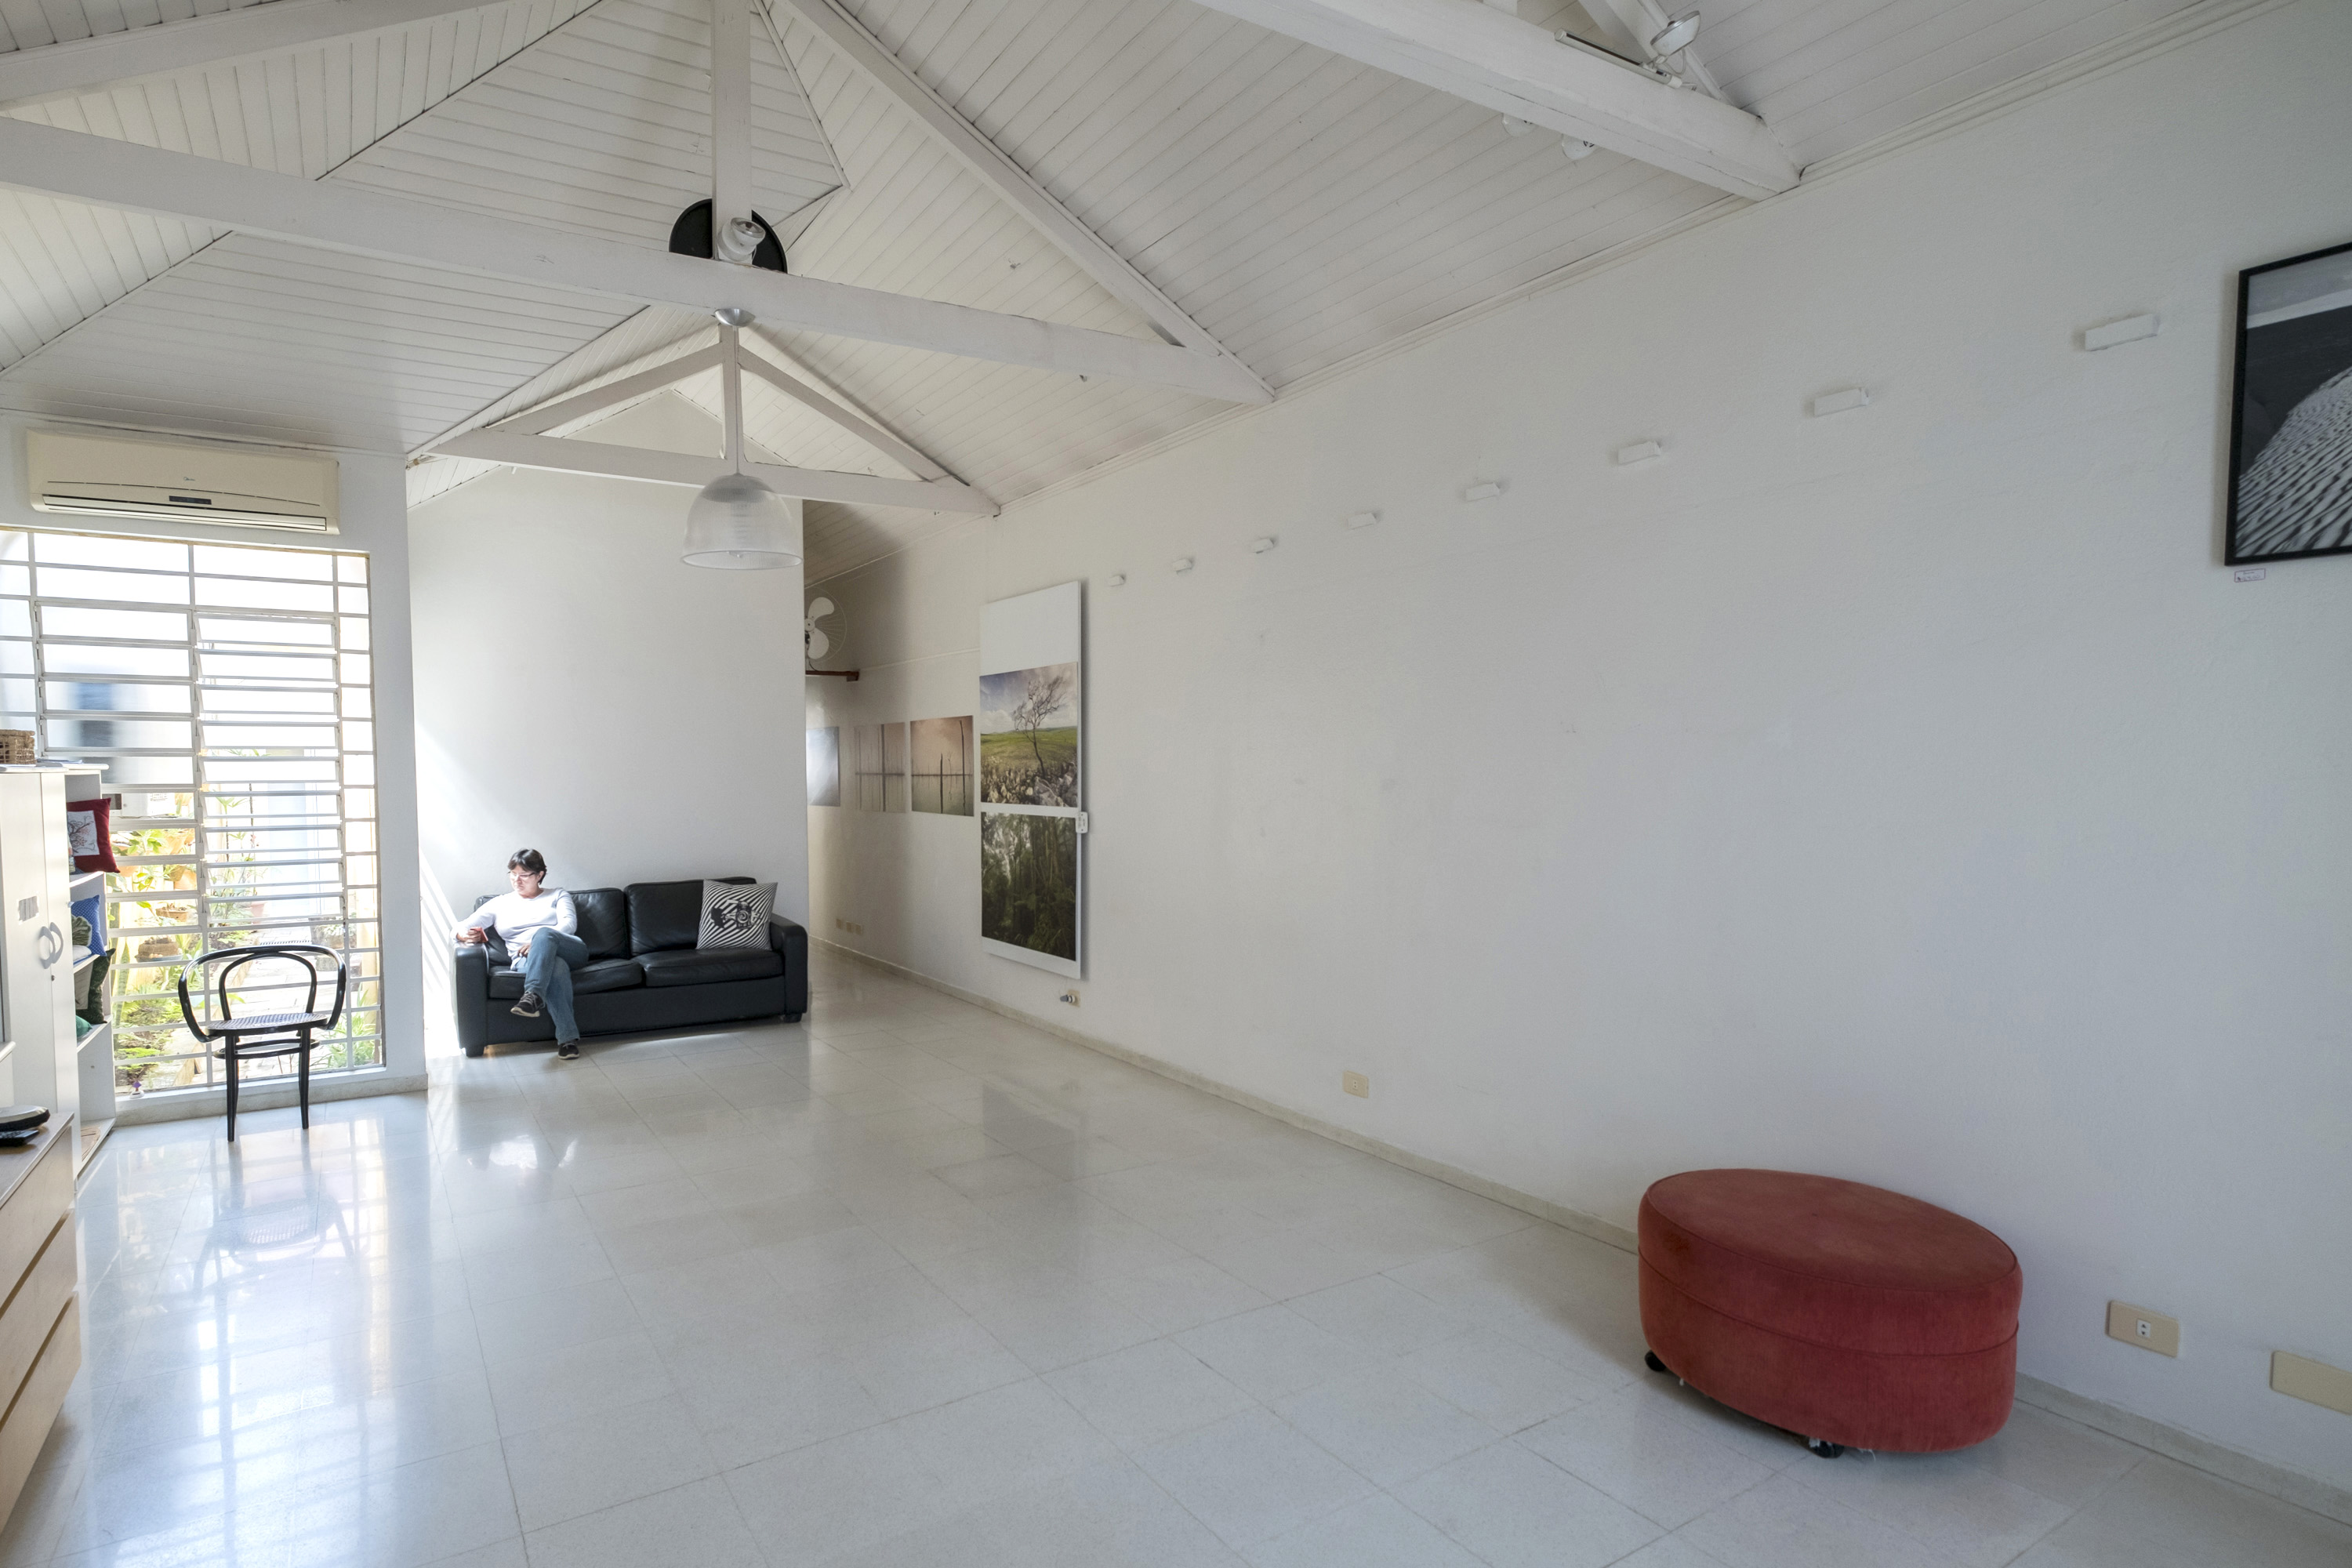 Estudio Vila Mariana, espaço para sessões de foto, video ou cursos. Fotos Mauricio Simonetti